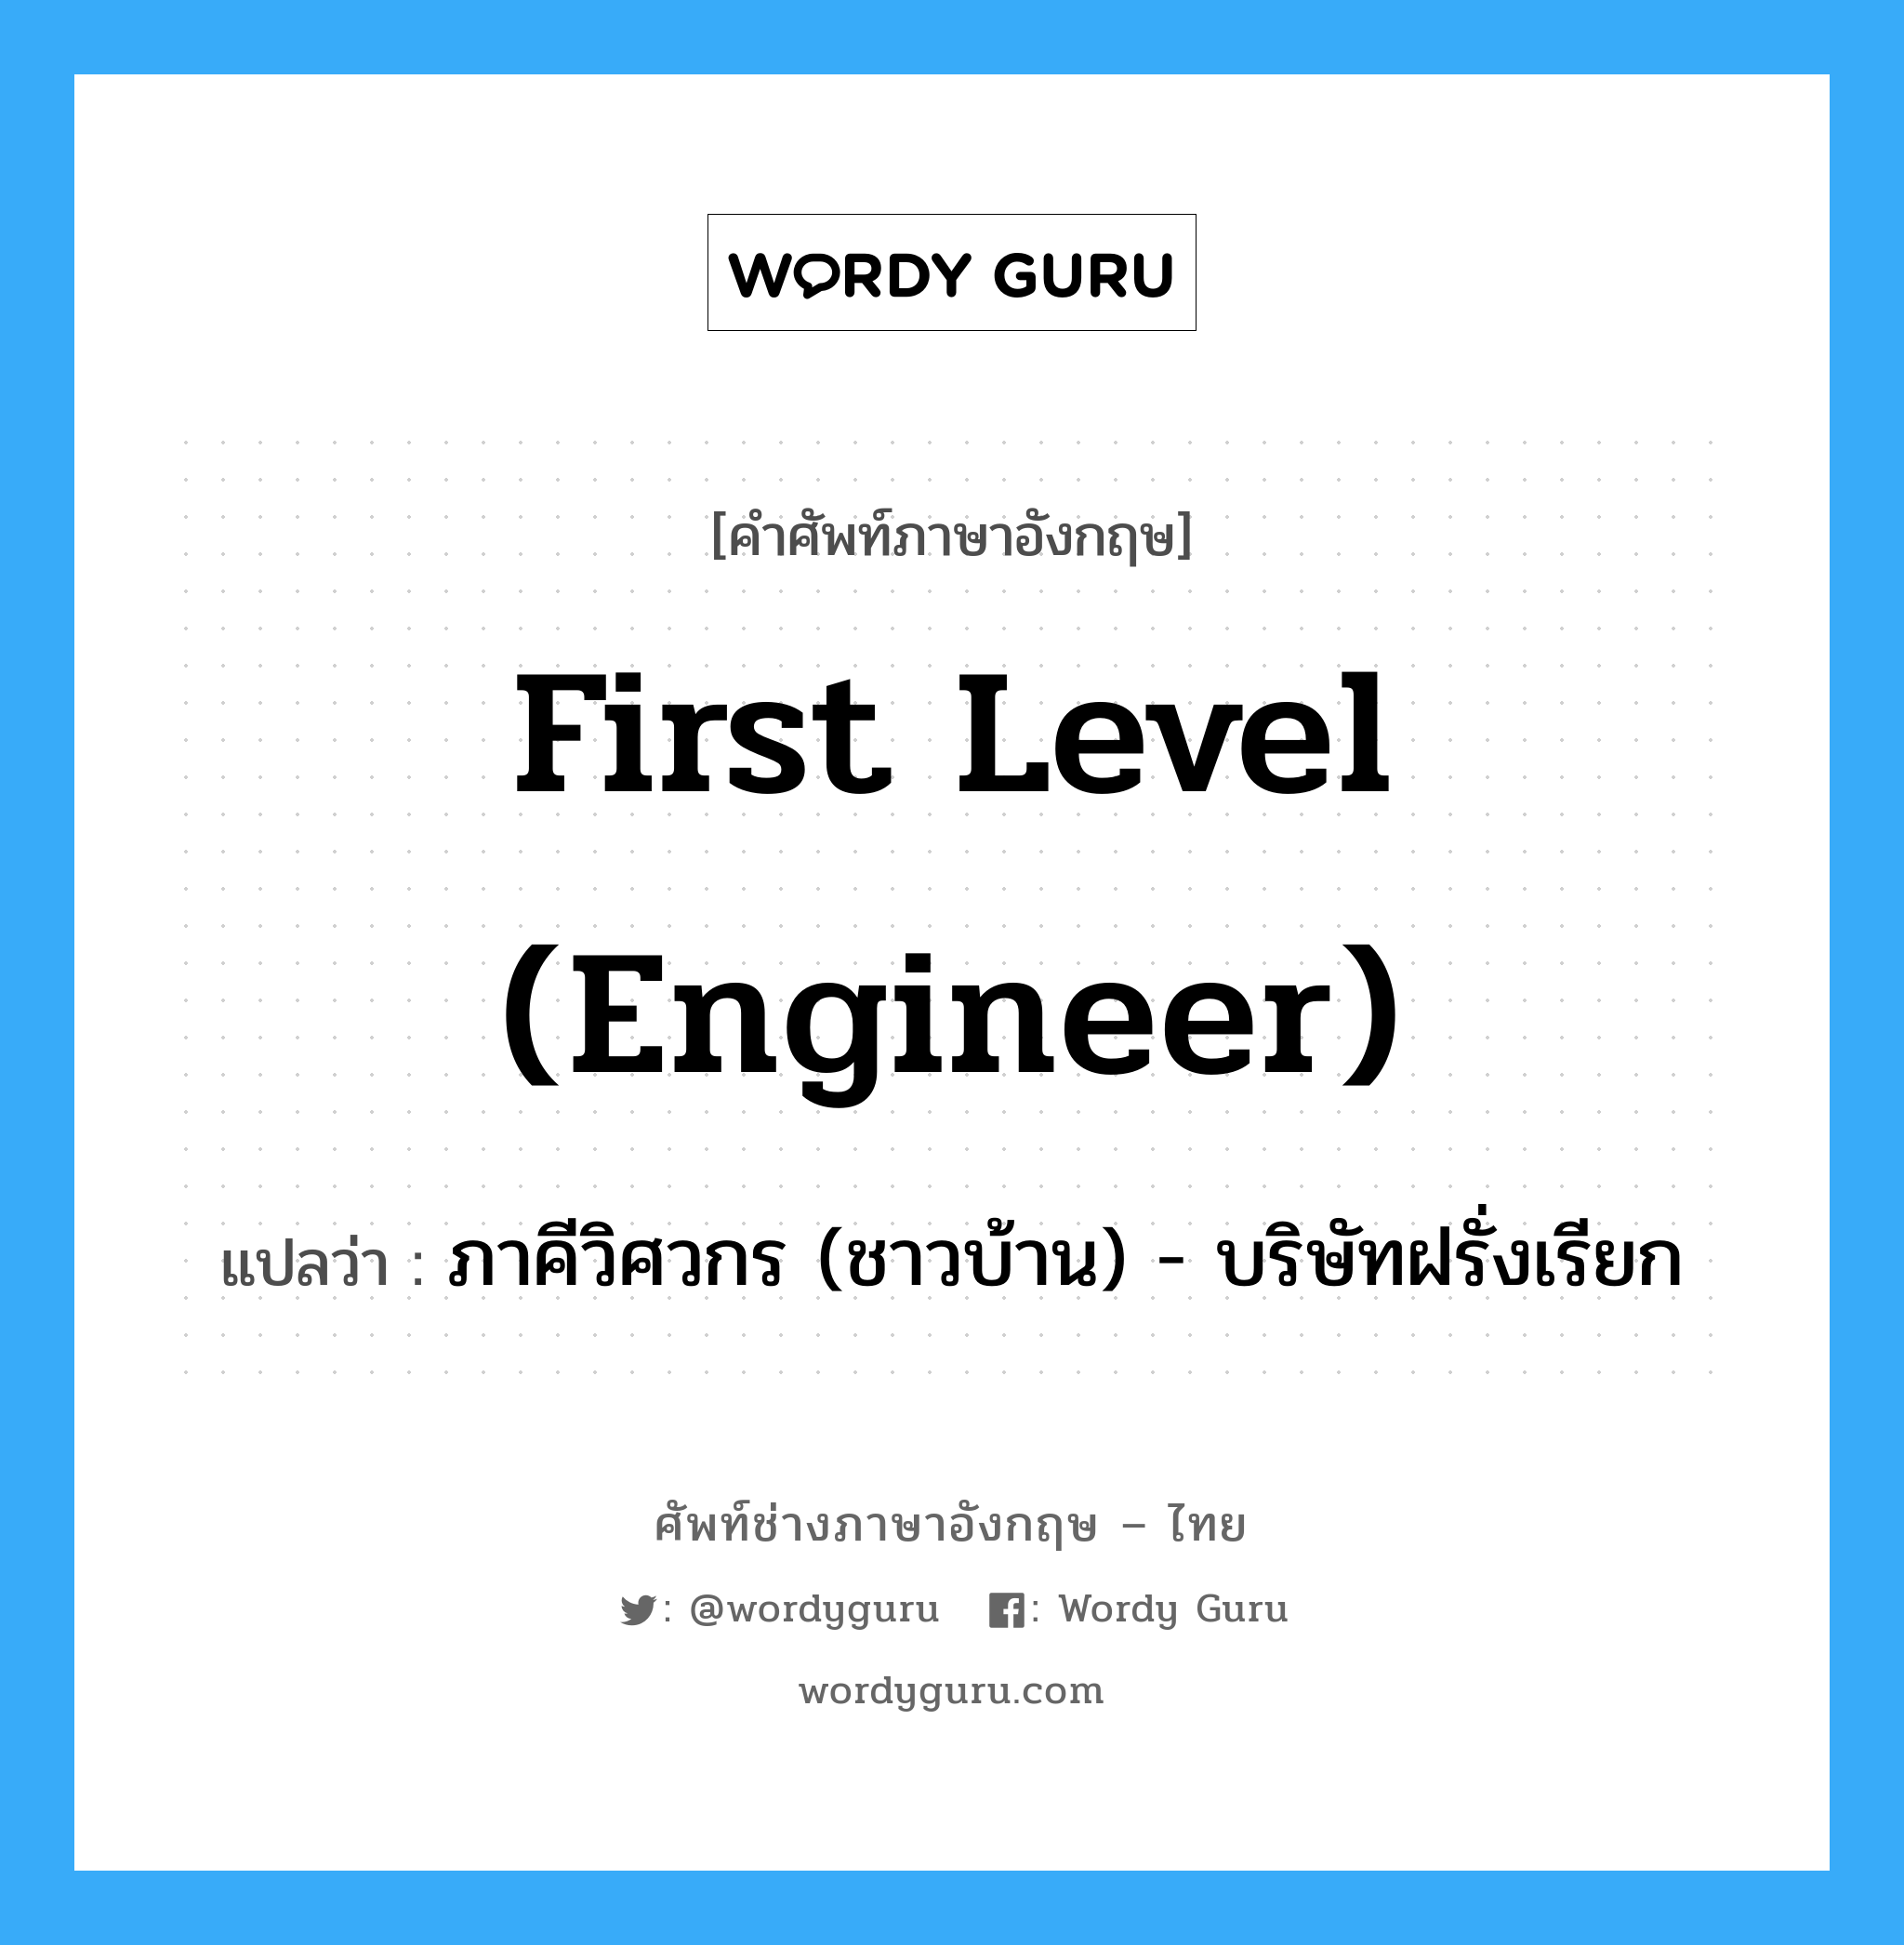 First level (engineer) แปลว่า?, คำศัพท์ช่างภาษาอังกฤษ - ไทย First level (engineer) คำศัพท์ภาษาอังกฤษ First level (engineer) แปลว่า ภาคีวิศวกร (ชาวบ้าน) - บริษัทฝรั่งเรียก